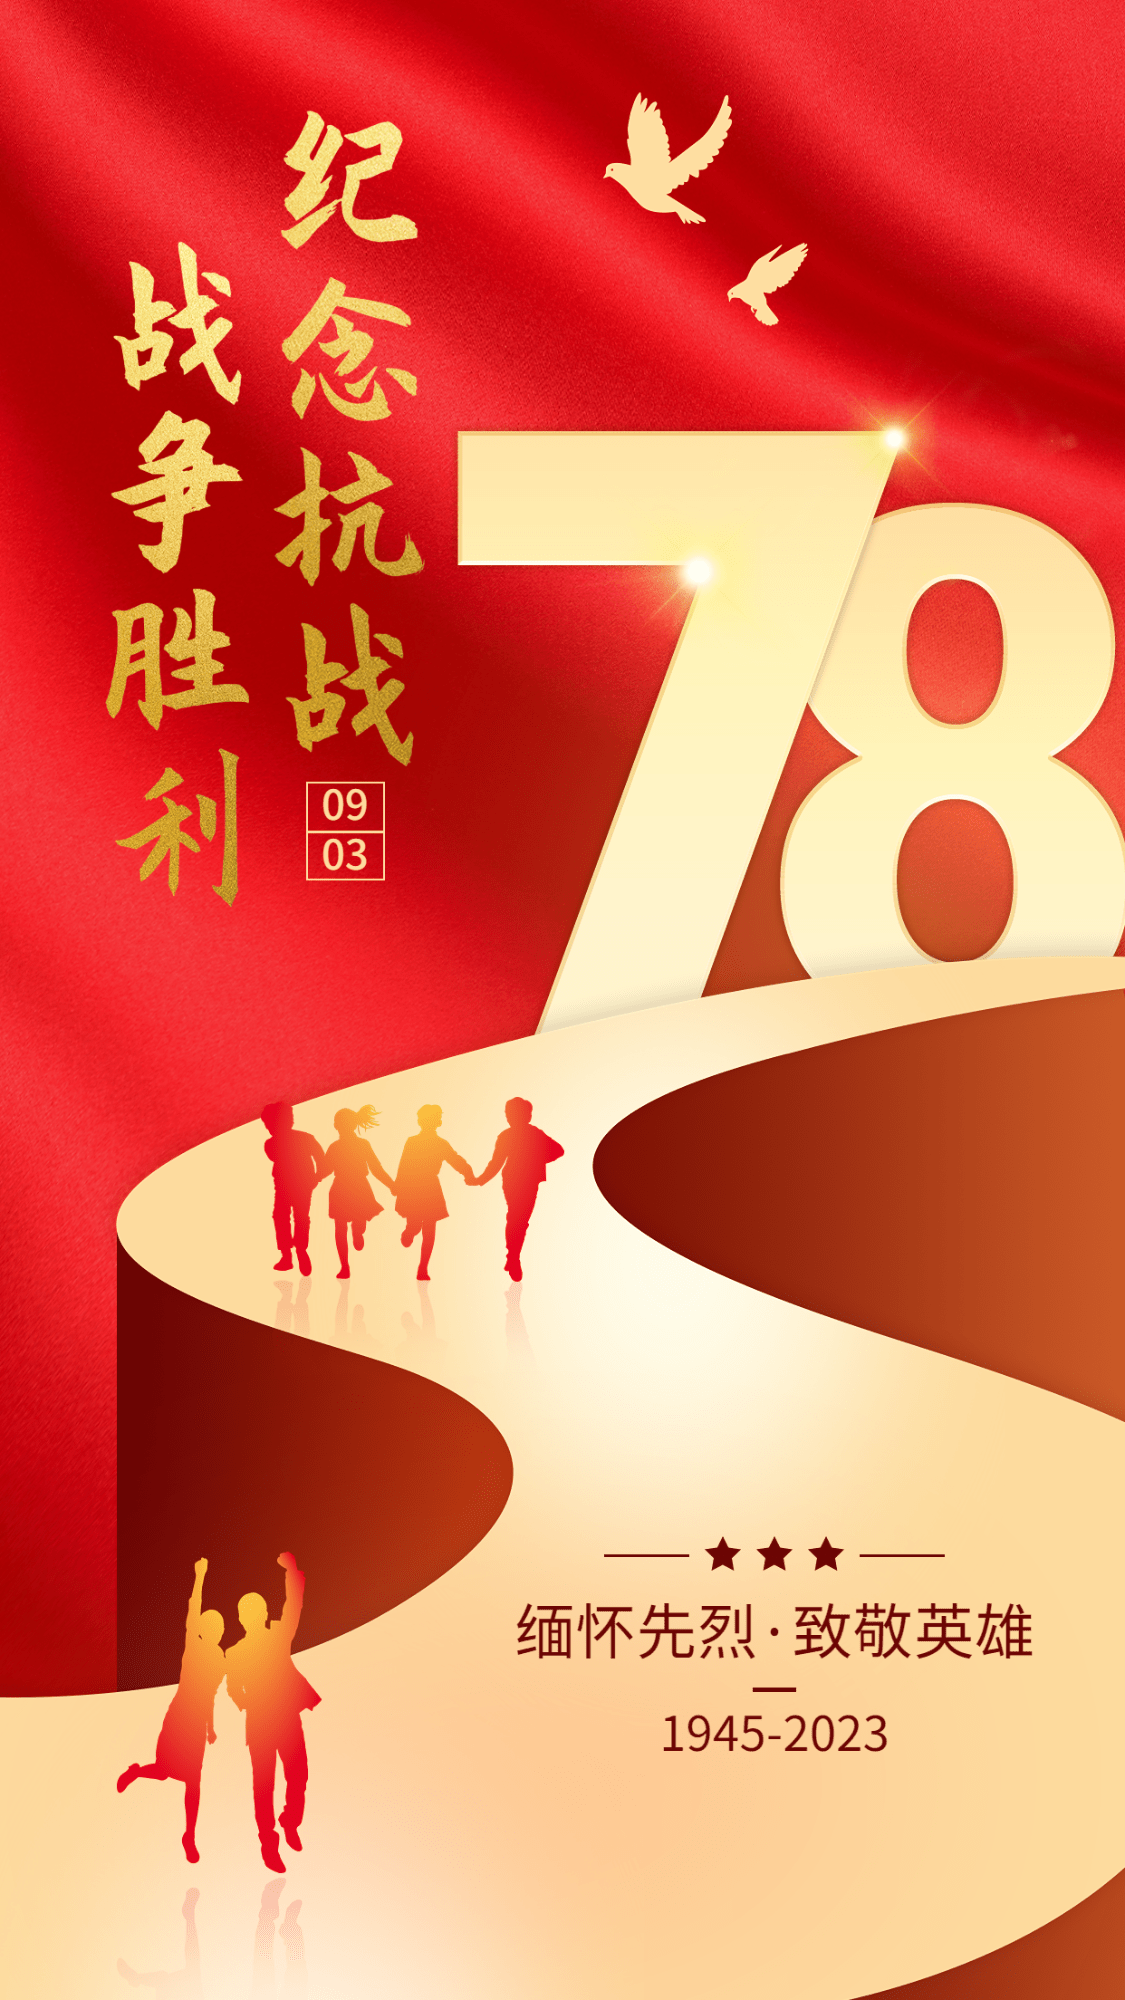 中国抗战胜利纪念日节日祝福政务风手机海报预览效果